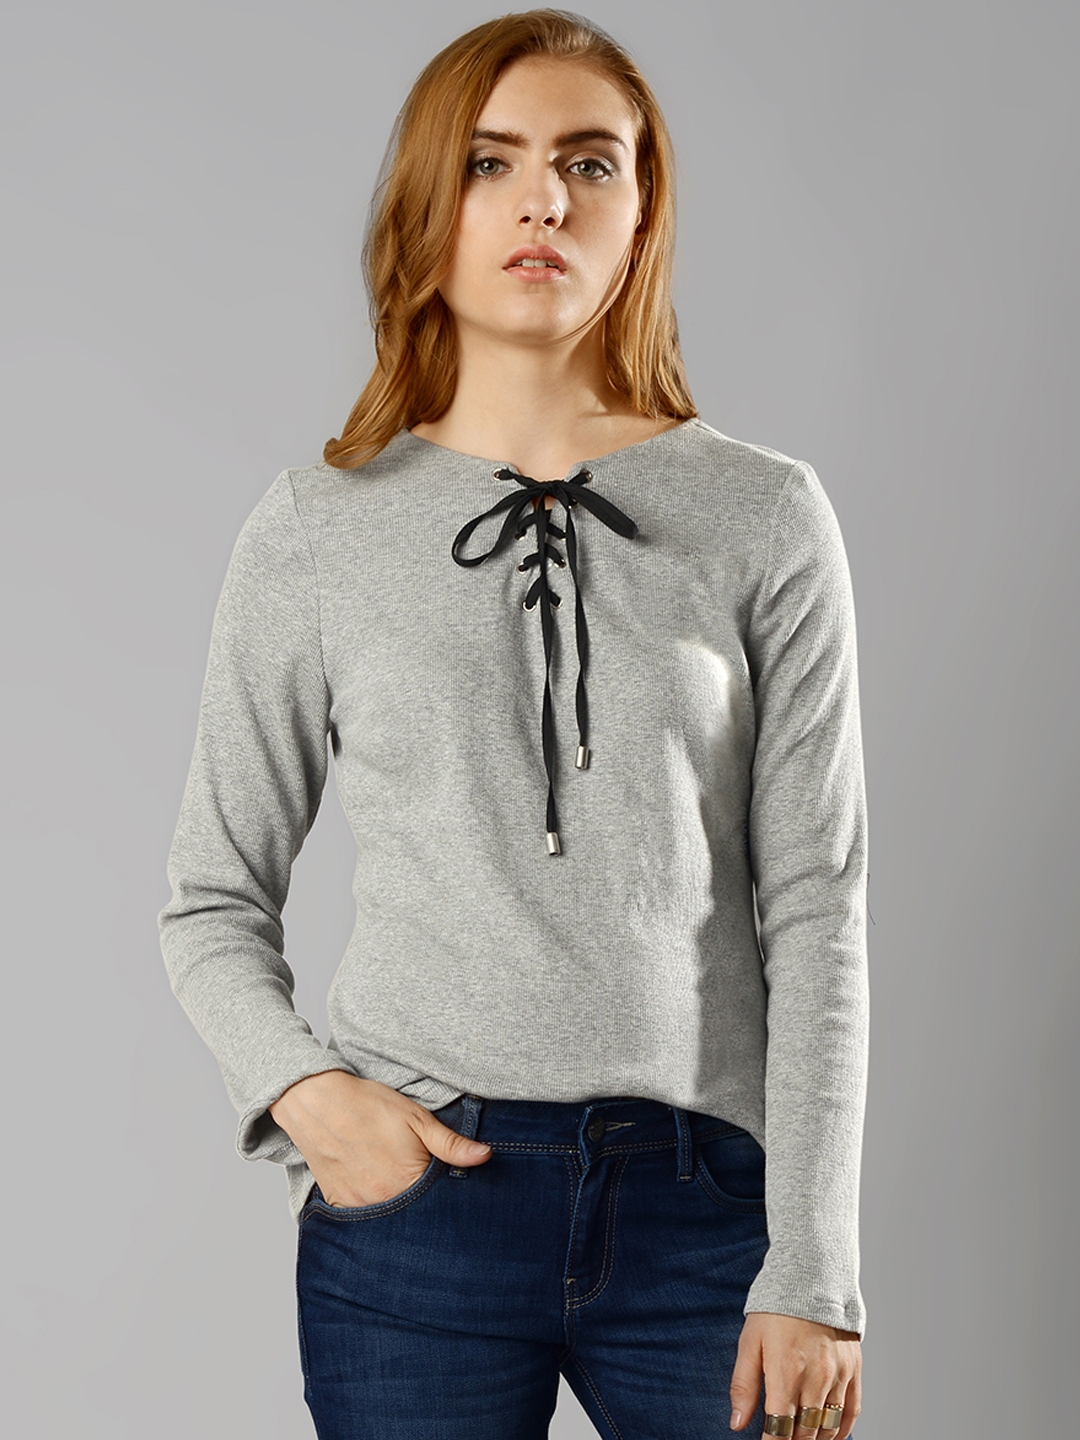 Buy Faballey Women Grey Sweater - Sweaters for Women 1699651 | Myntra